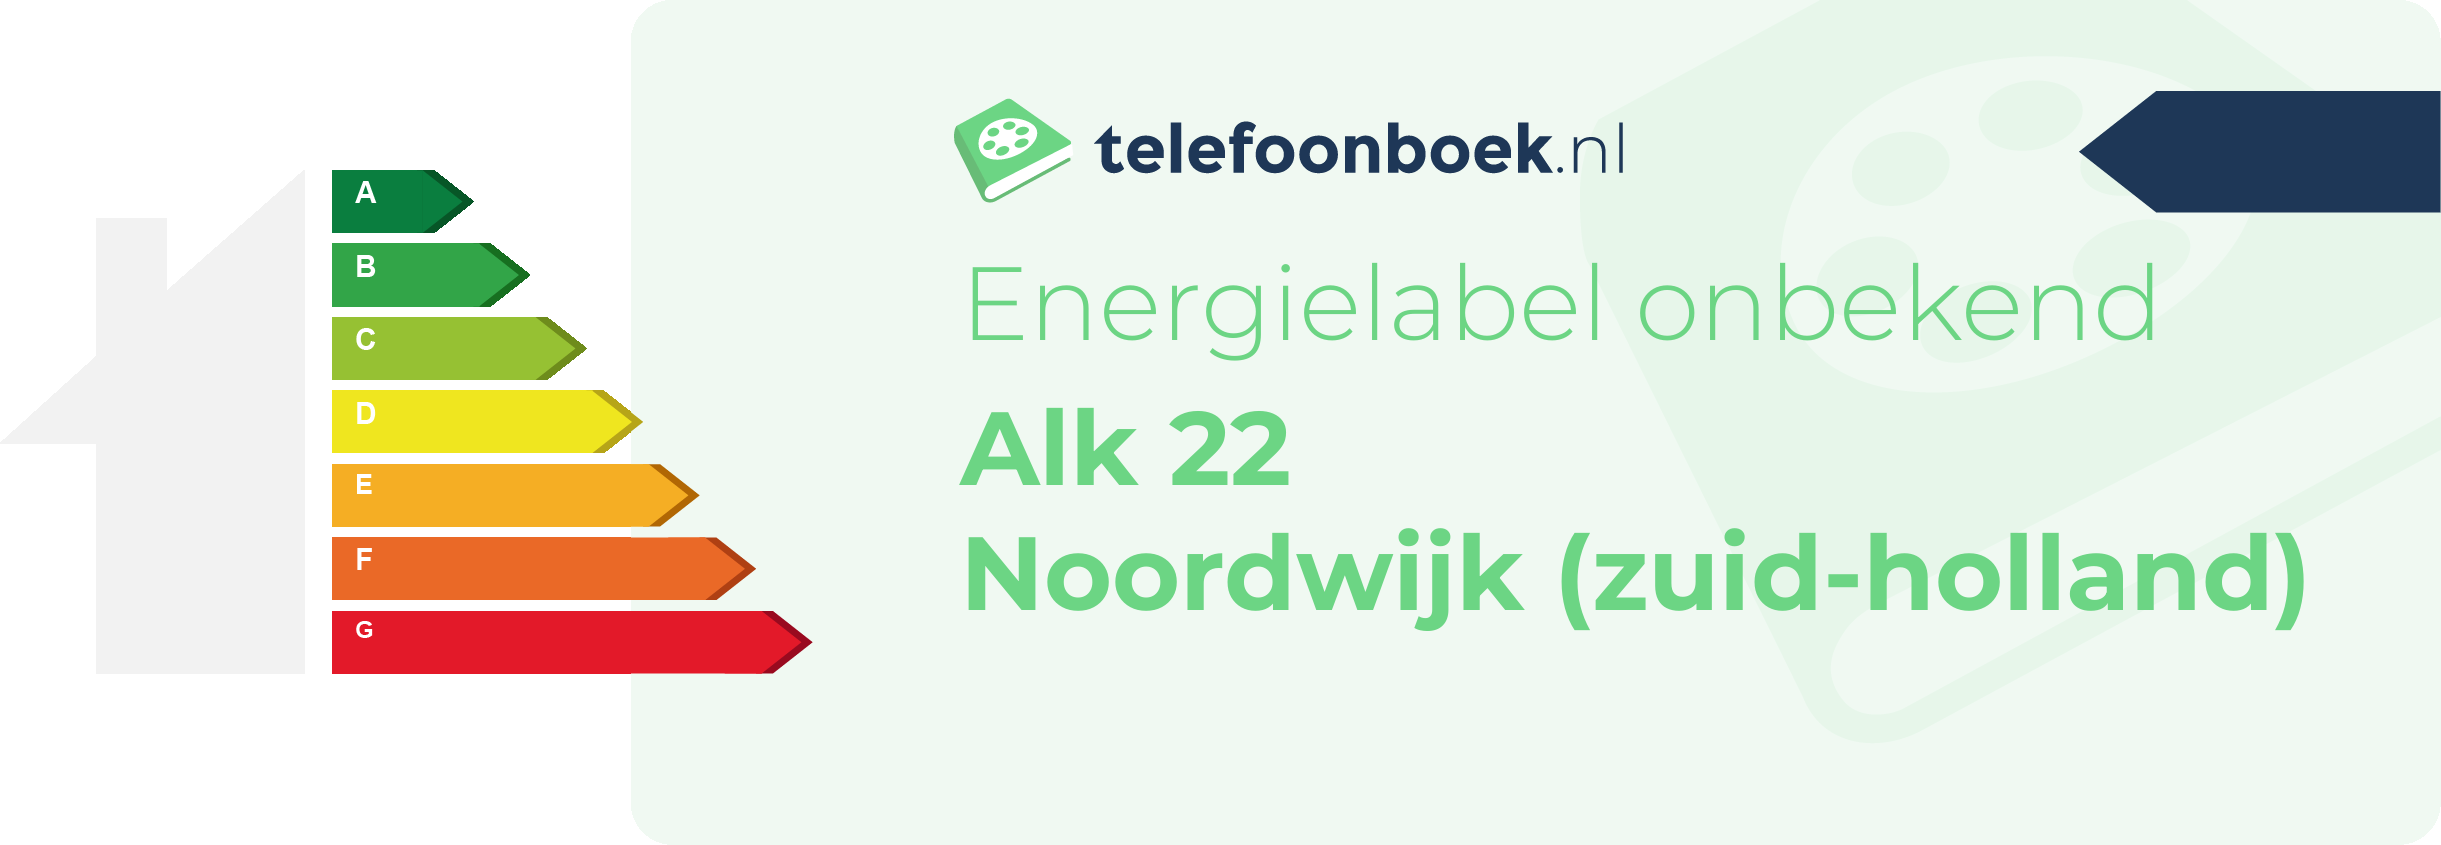 Energielabel Alk 22 Noordwijk (Zuid-Holland)